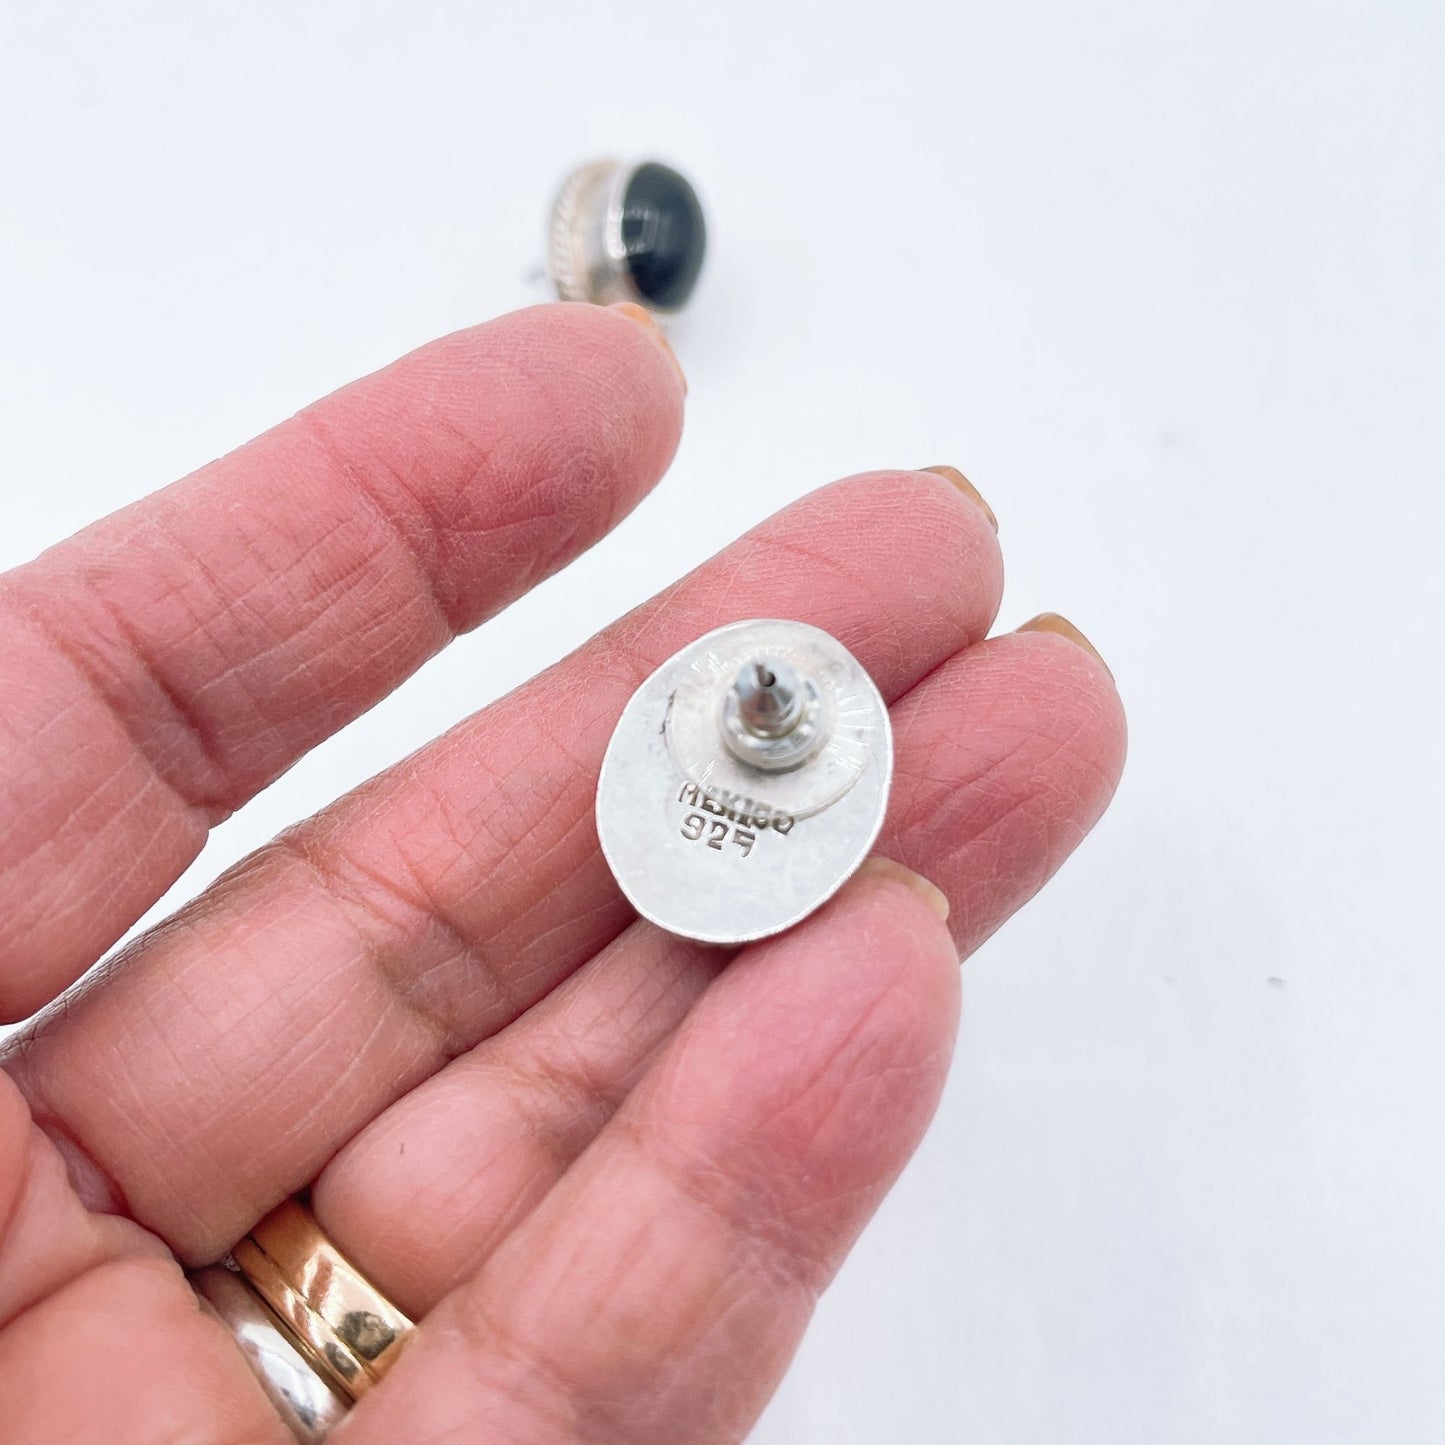 925 Sterling Silver Medium Oblong Onyx Earrings